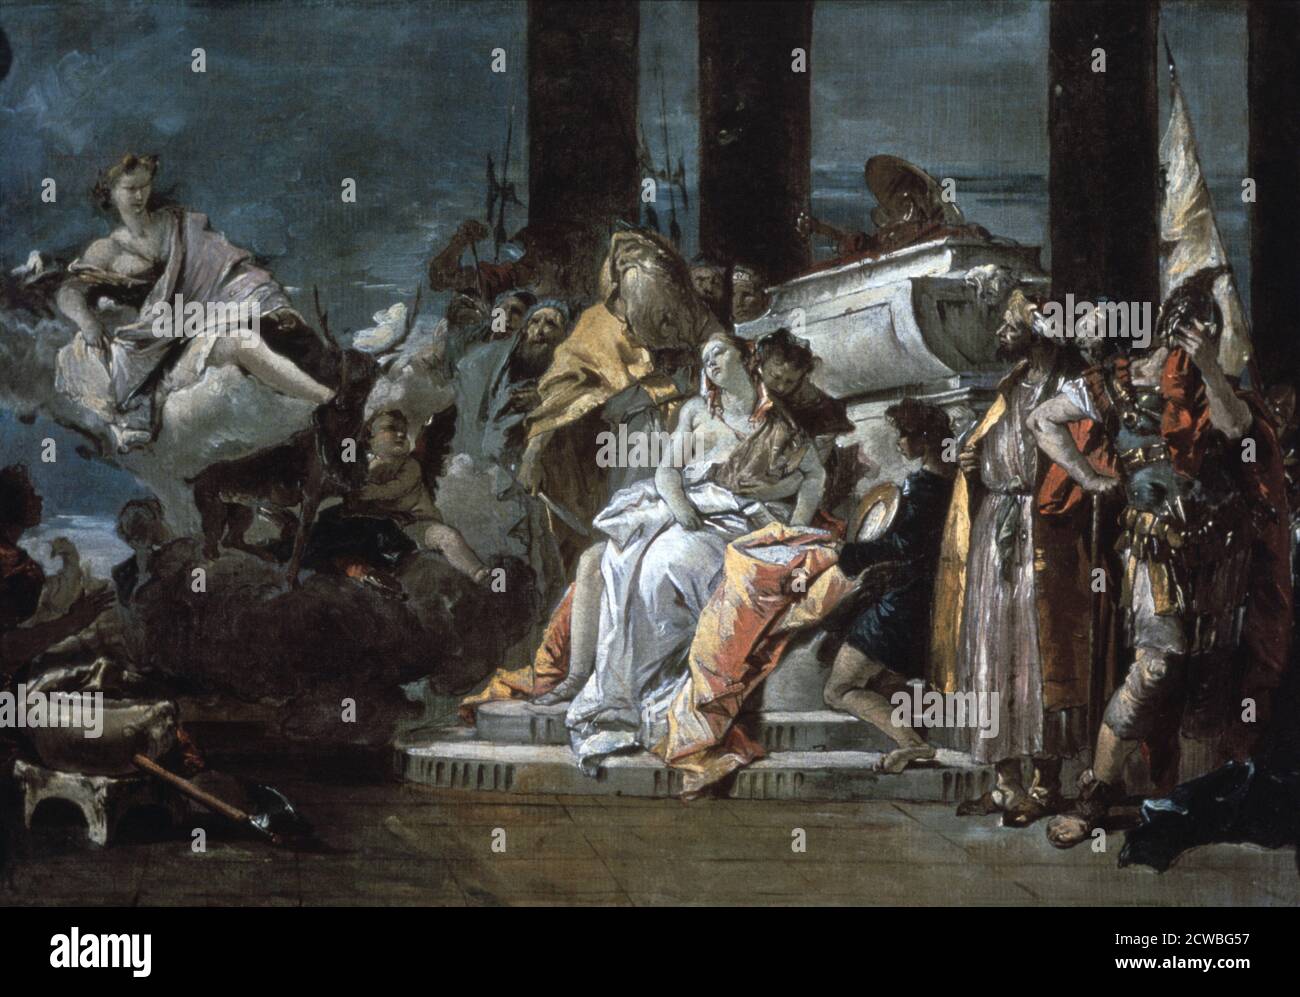 Opfer von Iphigenia' von Giovanni Battista Tiepolo, 1735. Artemis, die griechische Göttin der Jagd, beobachtet die Vorbereitungen für das Opfer von Iphigenia, Tochter von Agamemnon, das sie verlangt hat. Von der University of Arizona Museum of Art, Tucson, Arizona, USA. Stockfoto